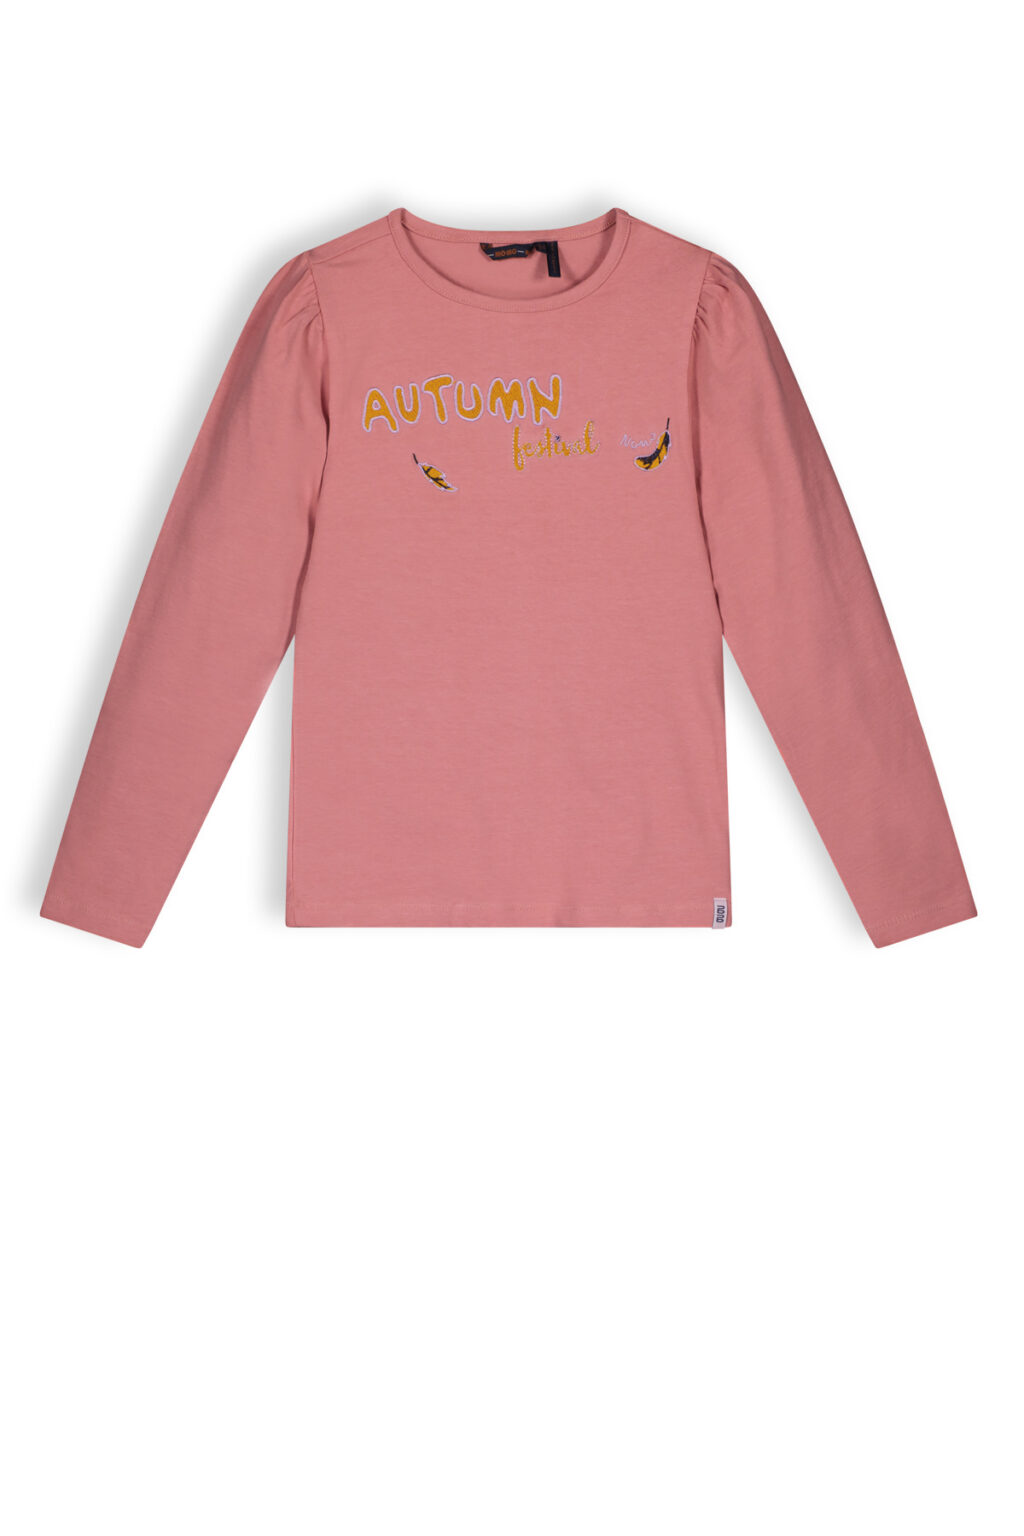 NoNo Meisjes shirt - Koss - Sunset roze ~ Spinze.nl